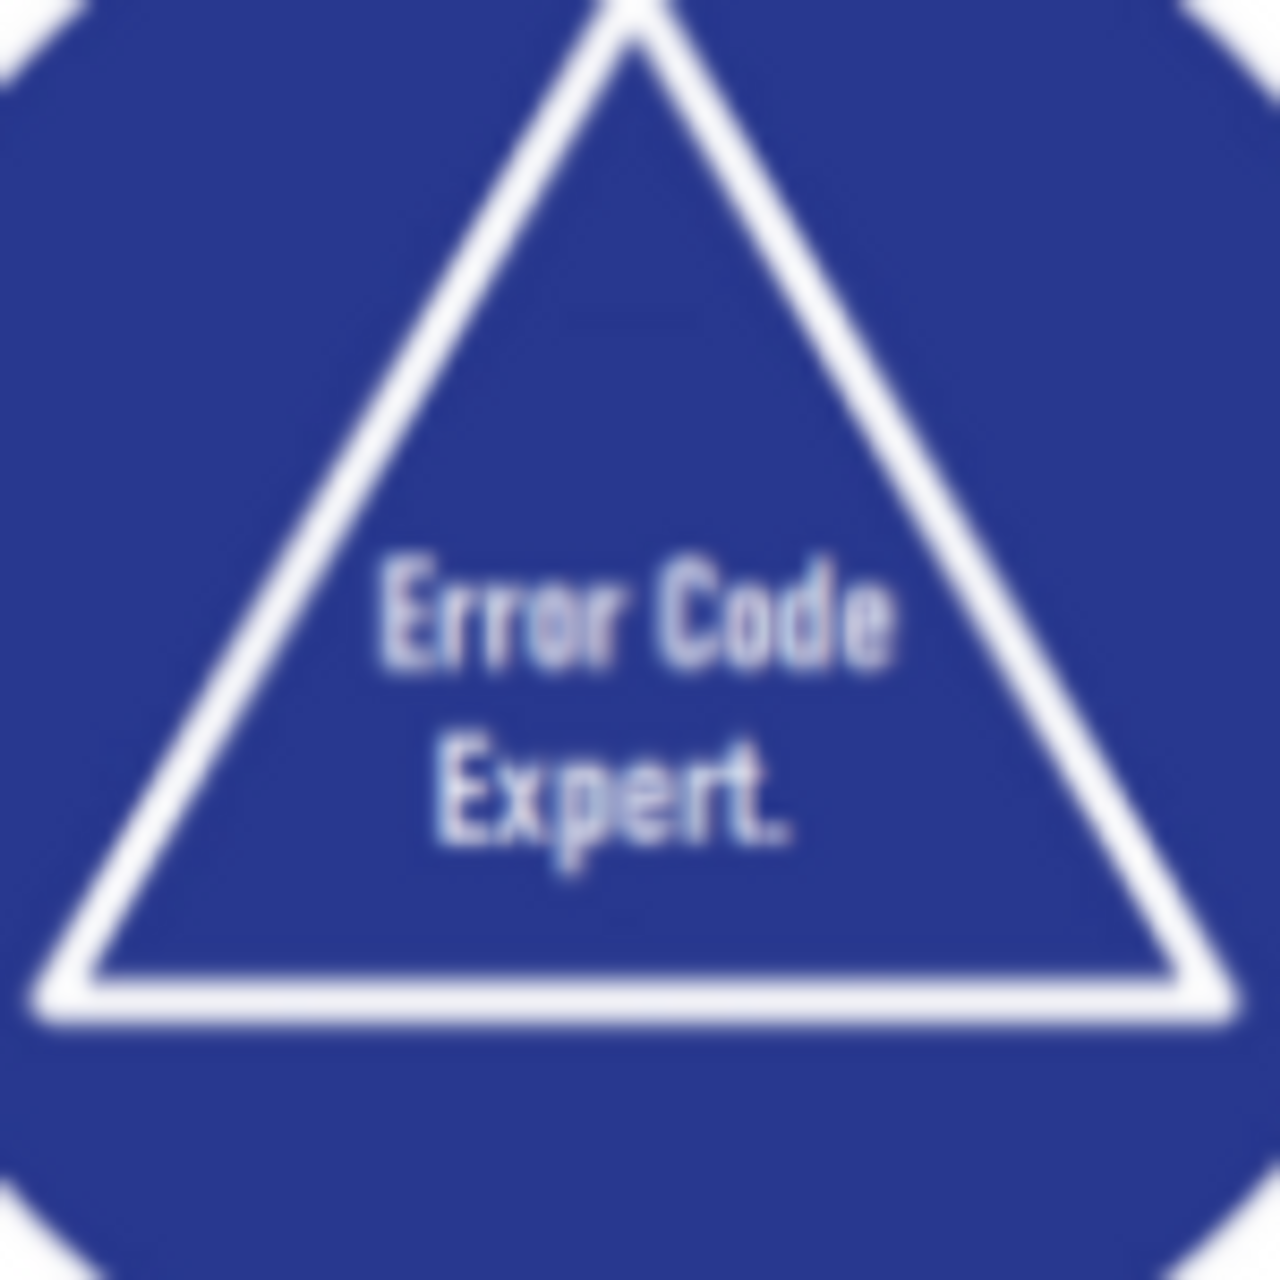 Errorcodeexpert